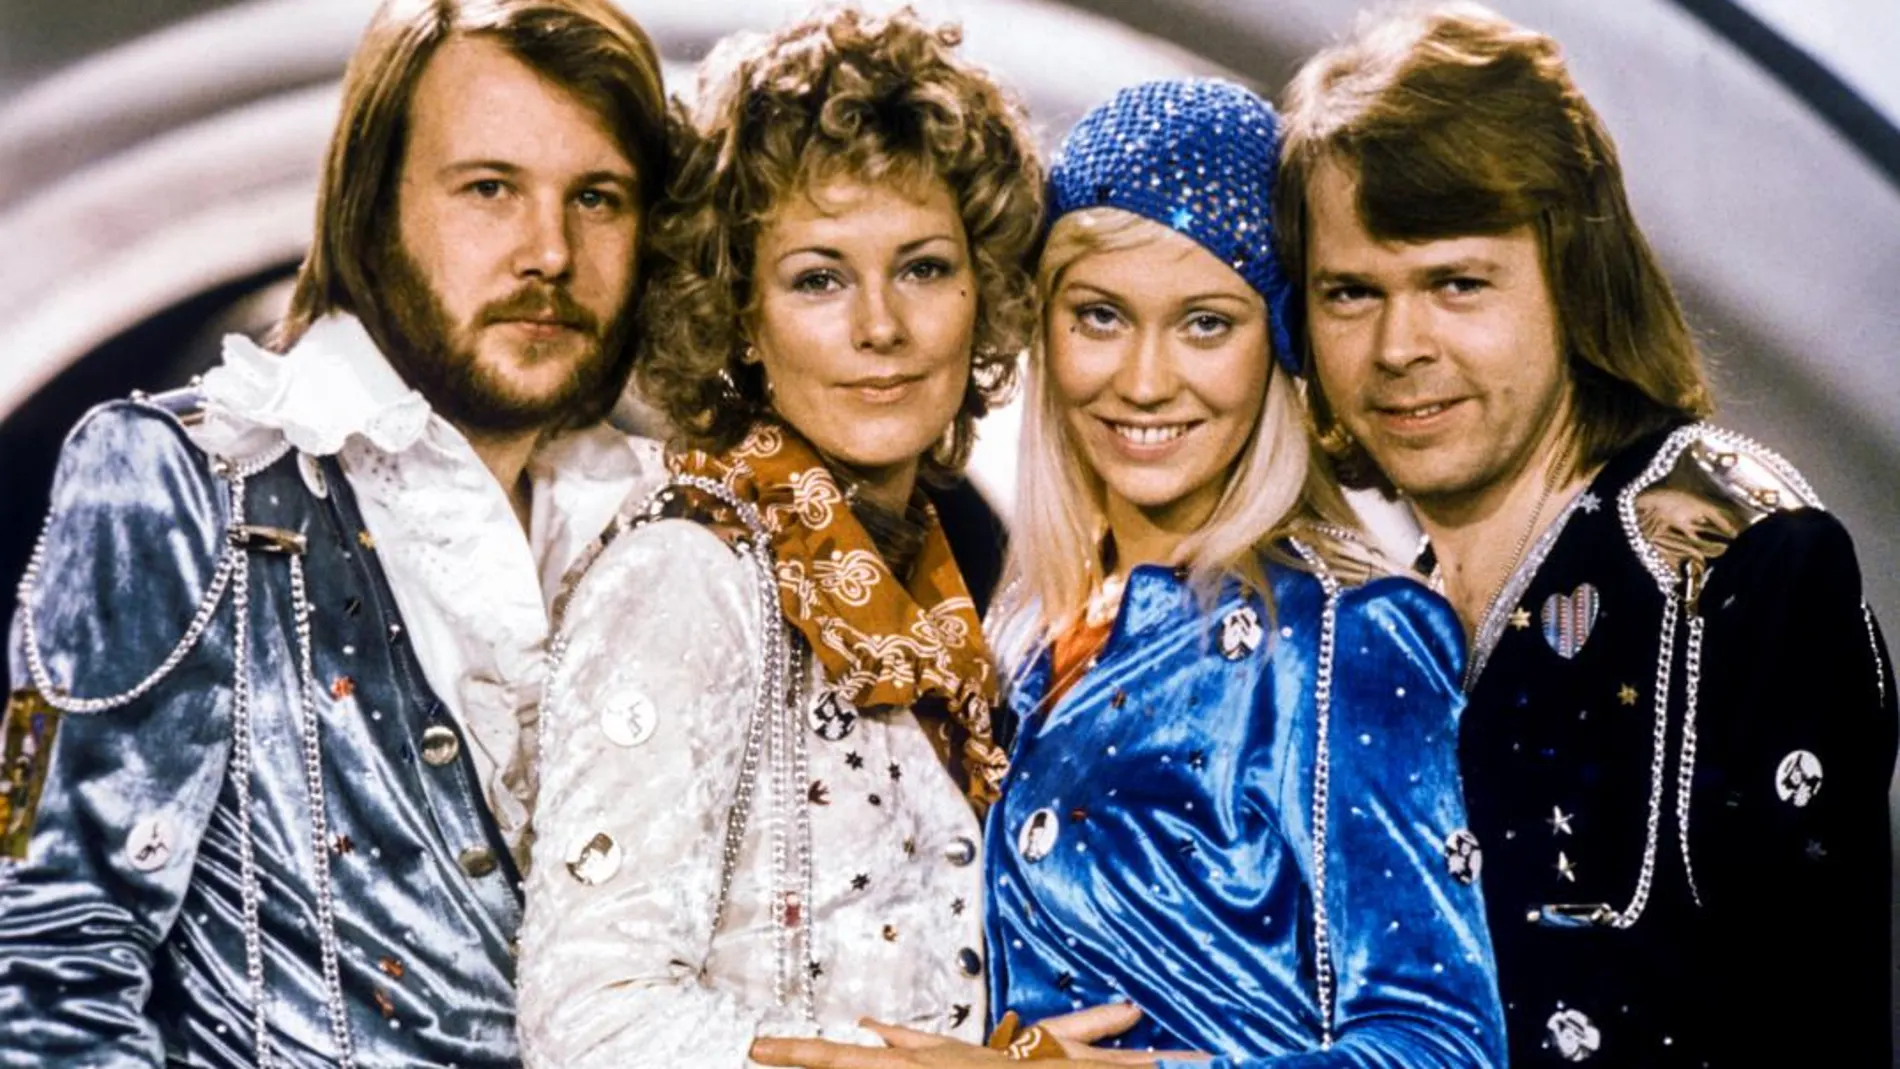 El cuarteto sueco ABBA, formado por Agnetha Faltskog, Anna-Frid Lyngstad, Bjorn Ulvaeus y Benny Andersson